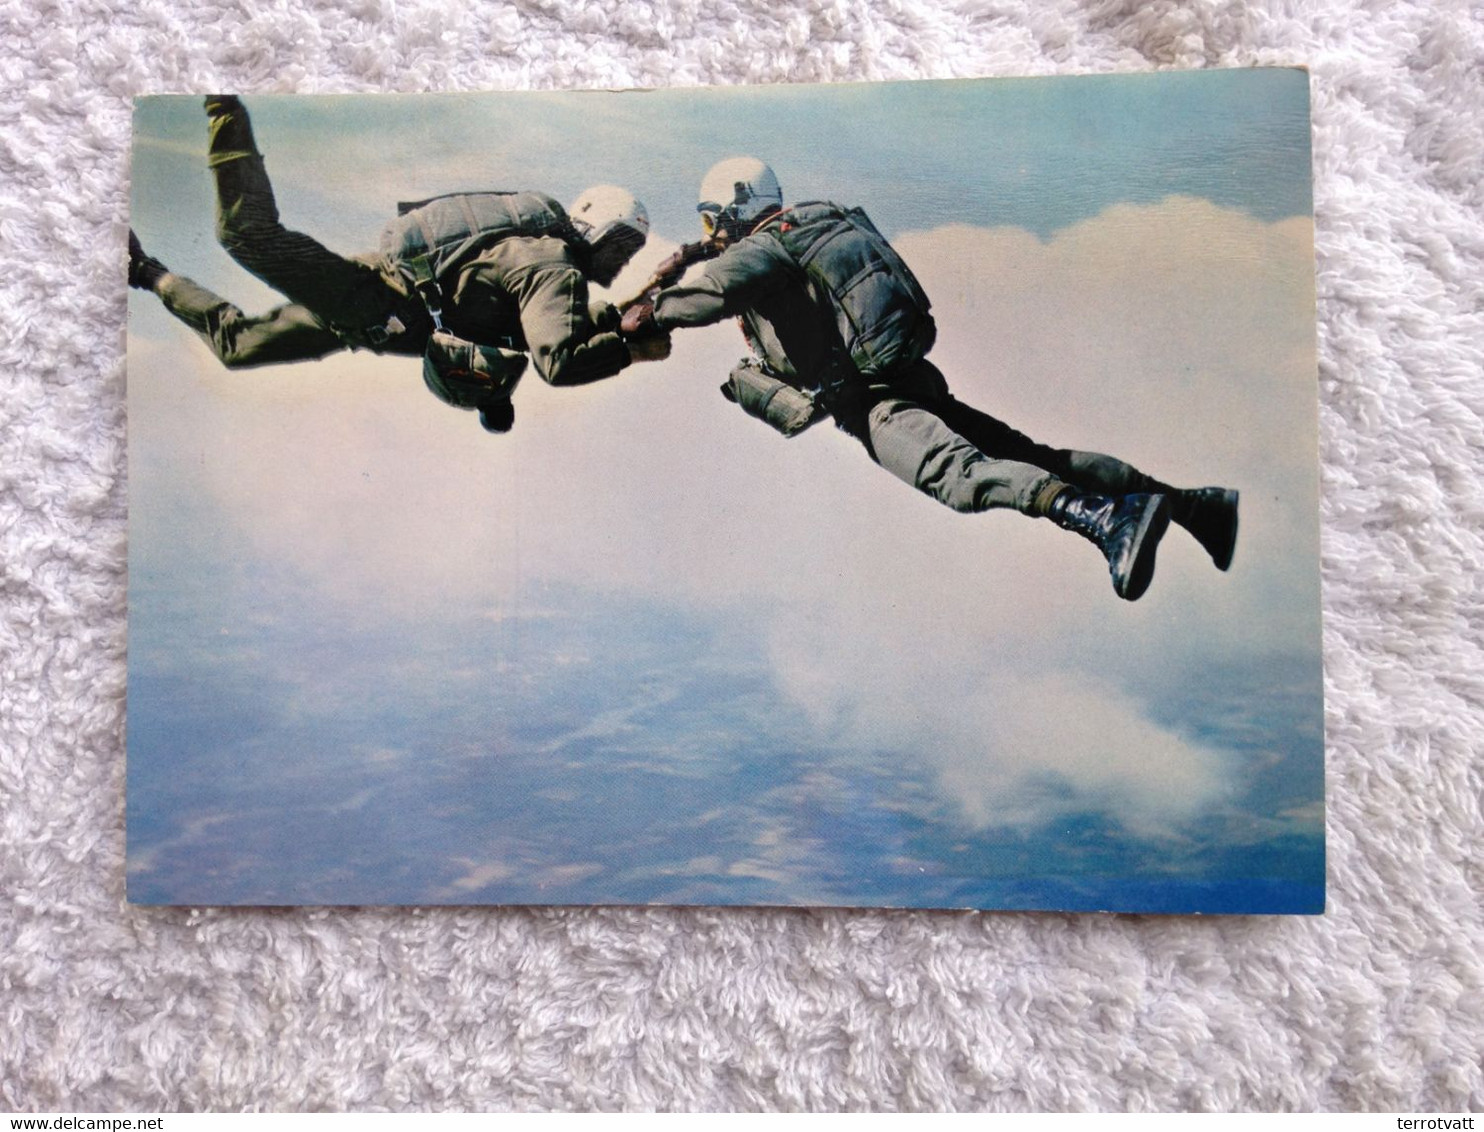 Ensemble de photos carte postale souvenir service militaire parachutiste